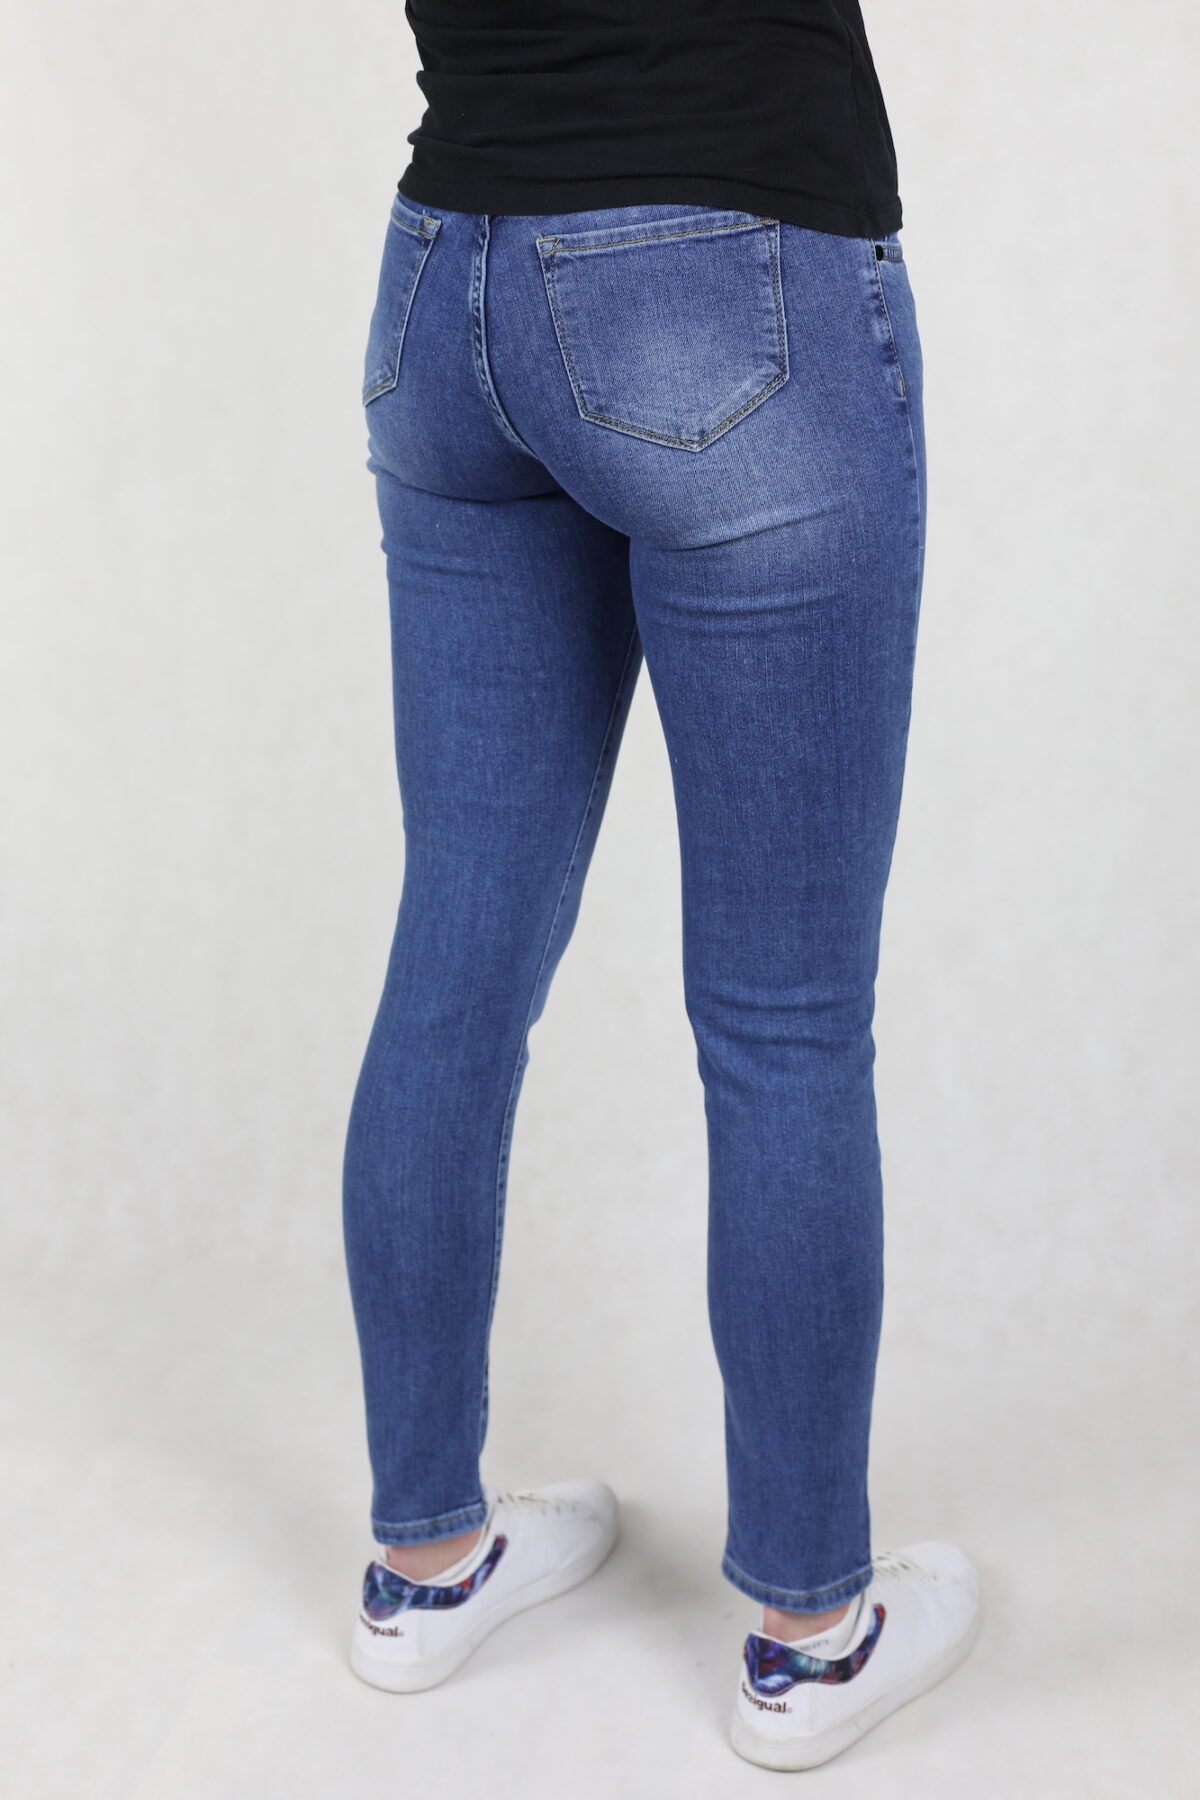 Damskie jeansy comfort stretch, niebieskie, z przetarciami, stan wysoki, nogawka prosta.